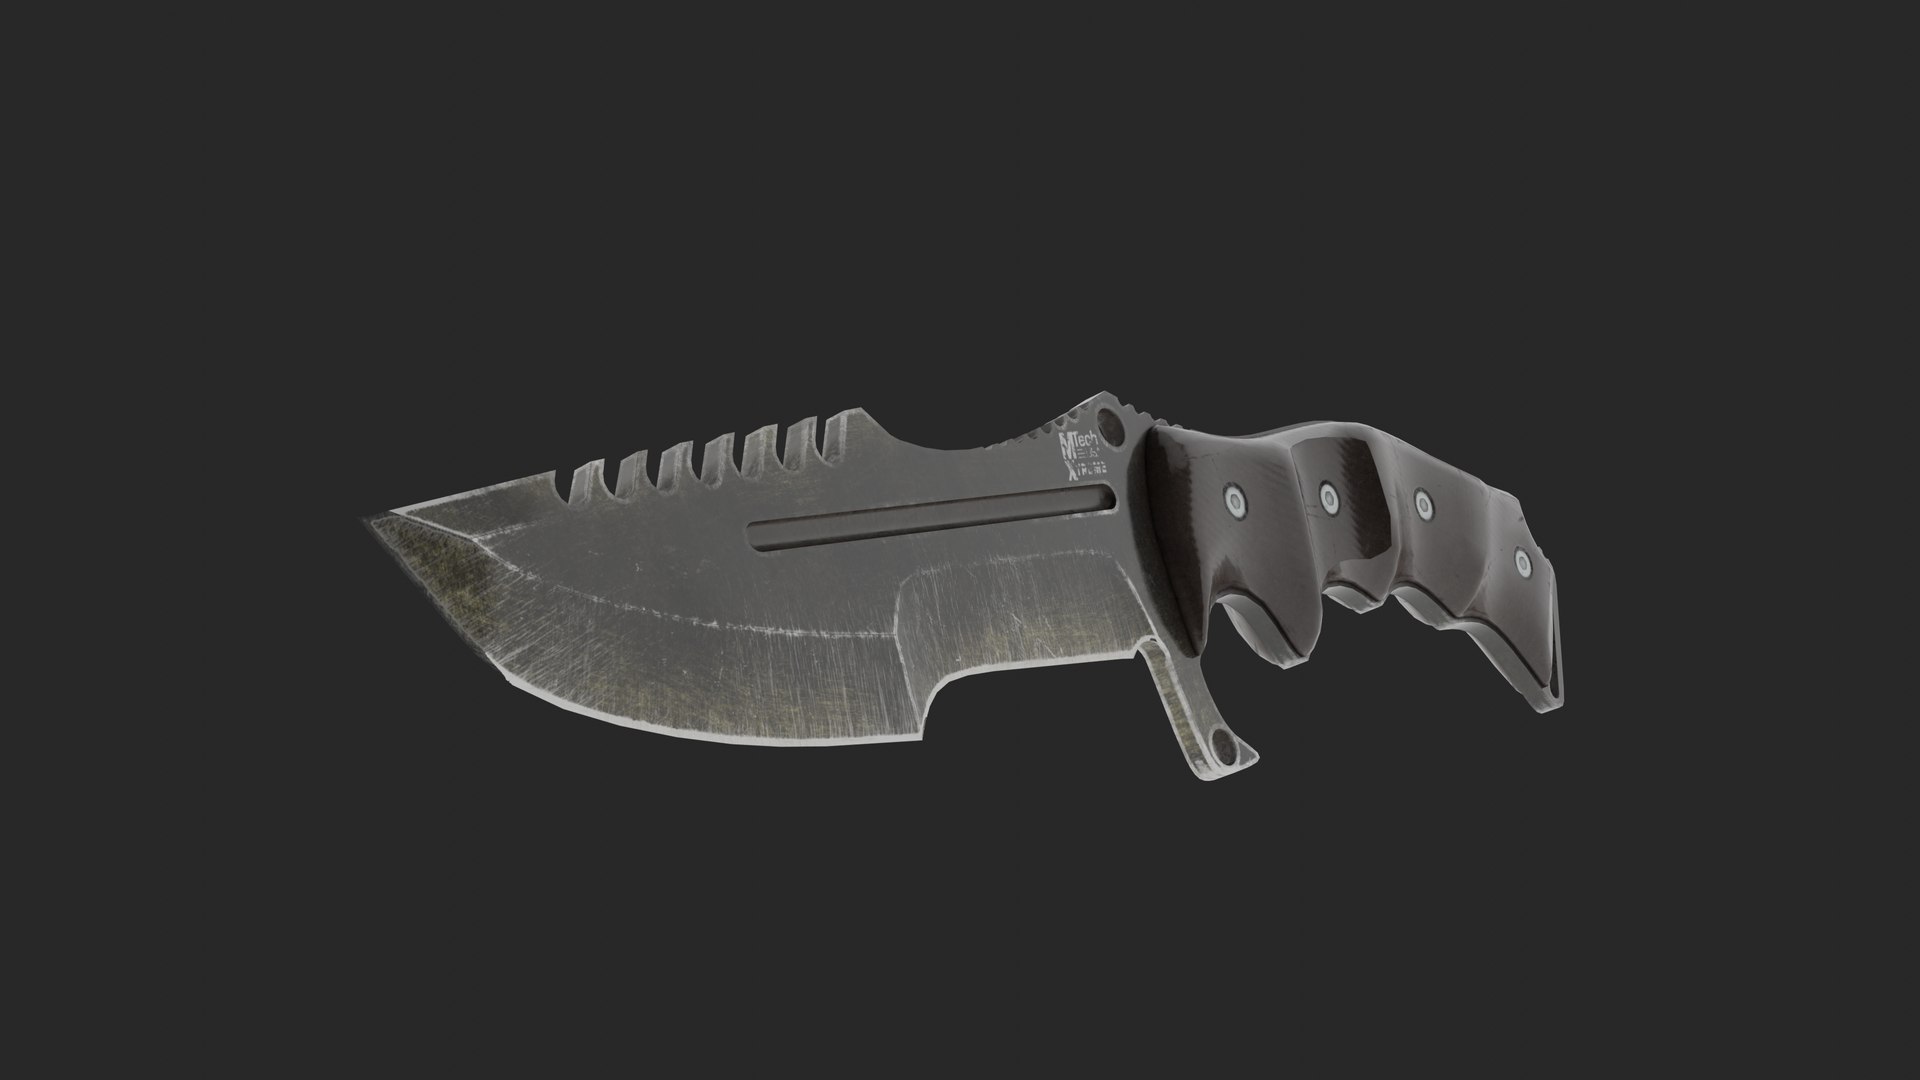 Tactical knife 3D model - TurboSquid 1406785